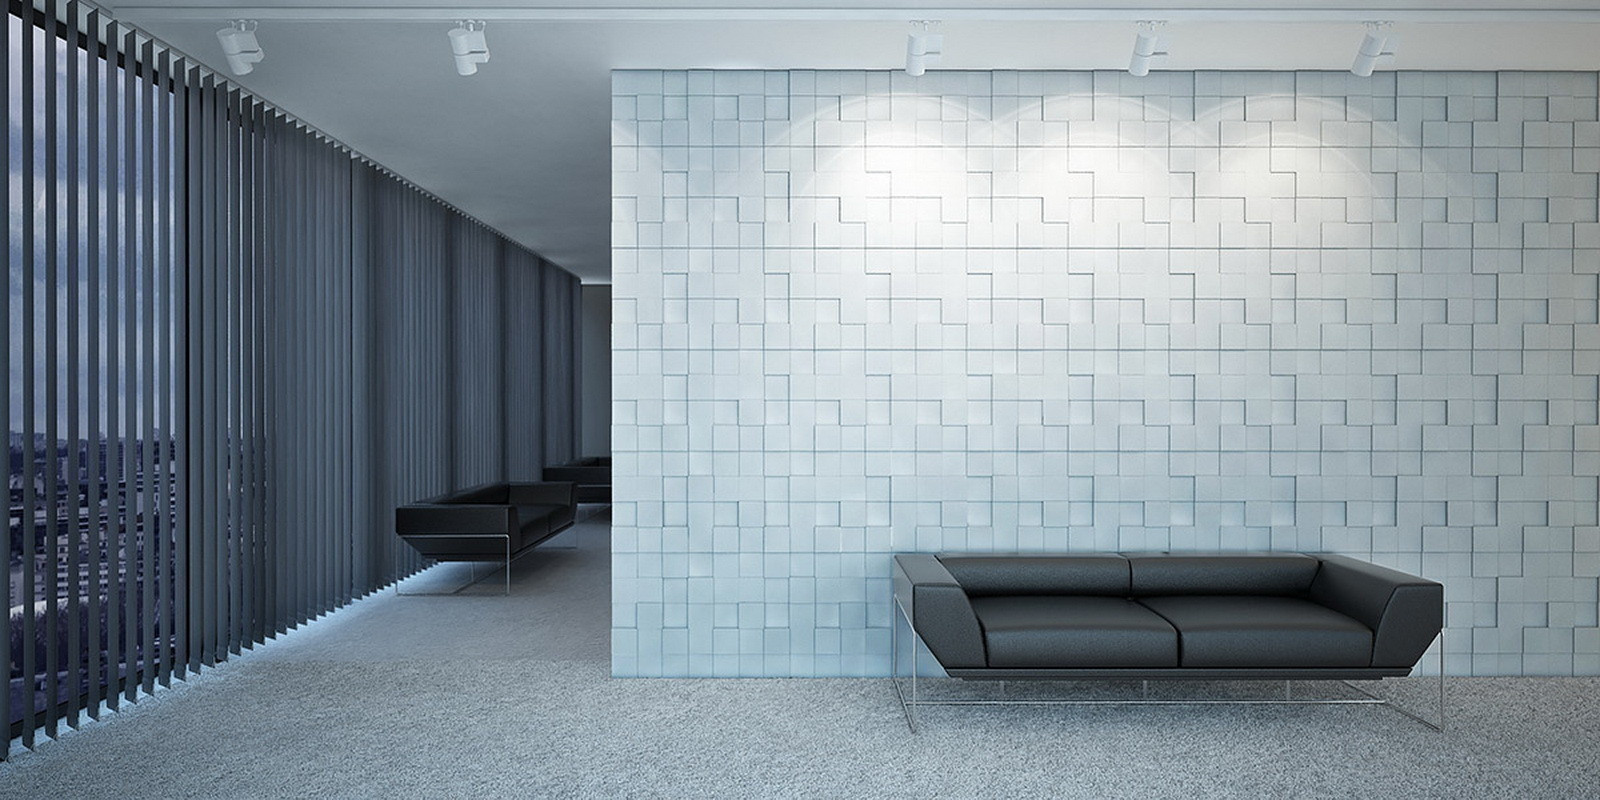 декоративные гипсовые панели для внутренней отделки стен в интерьере